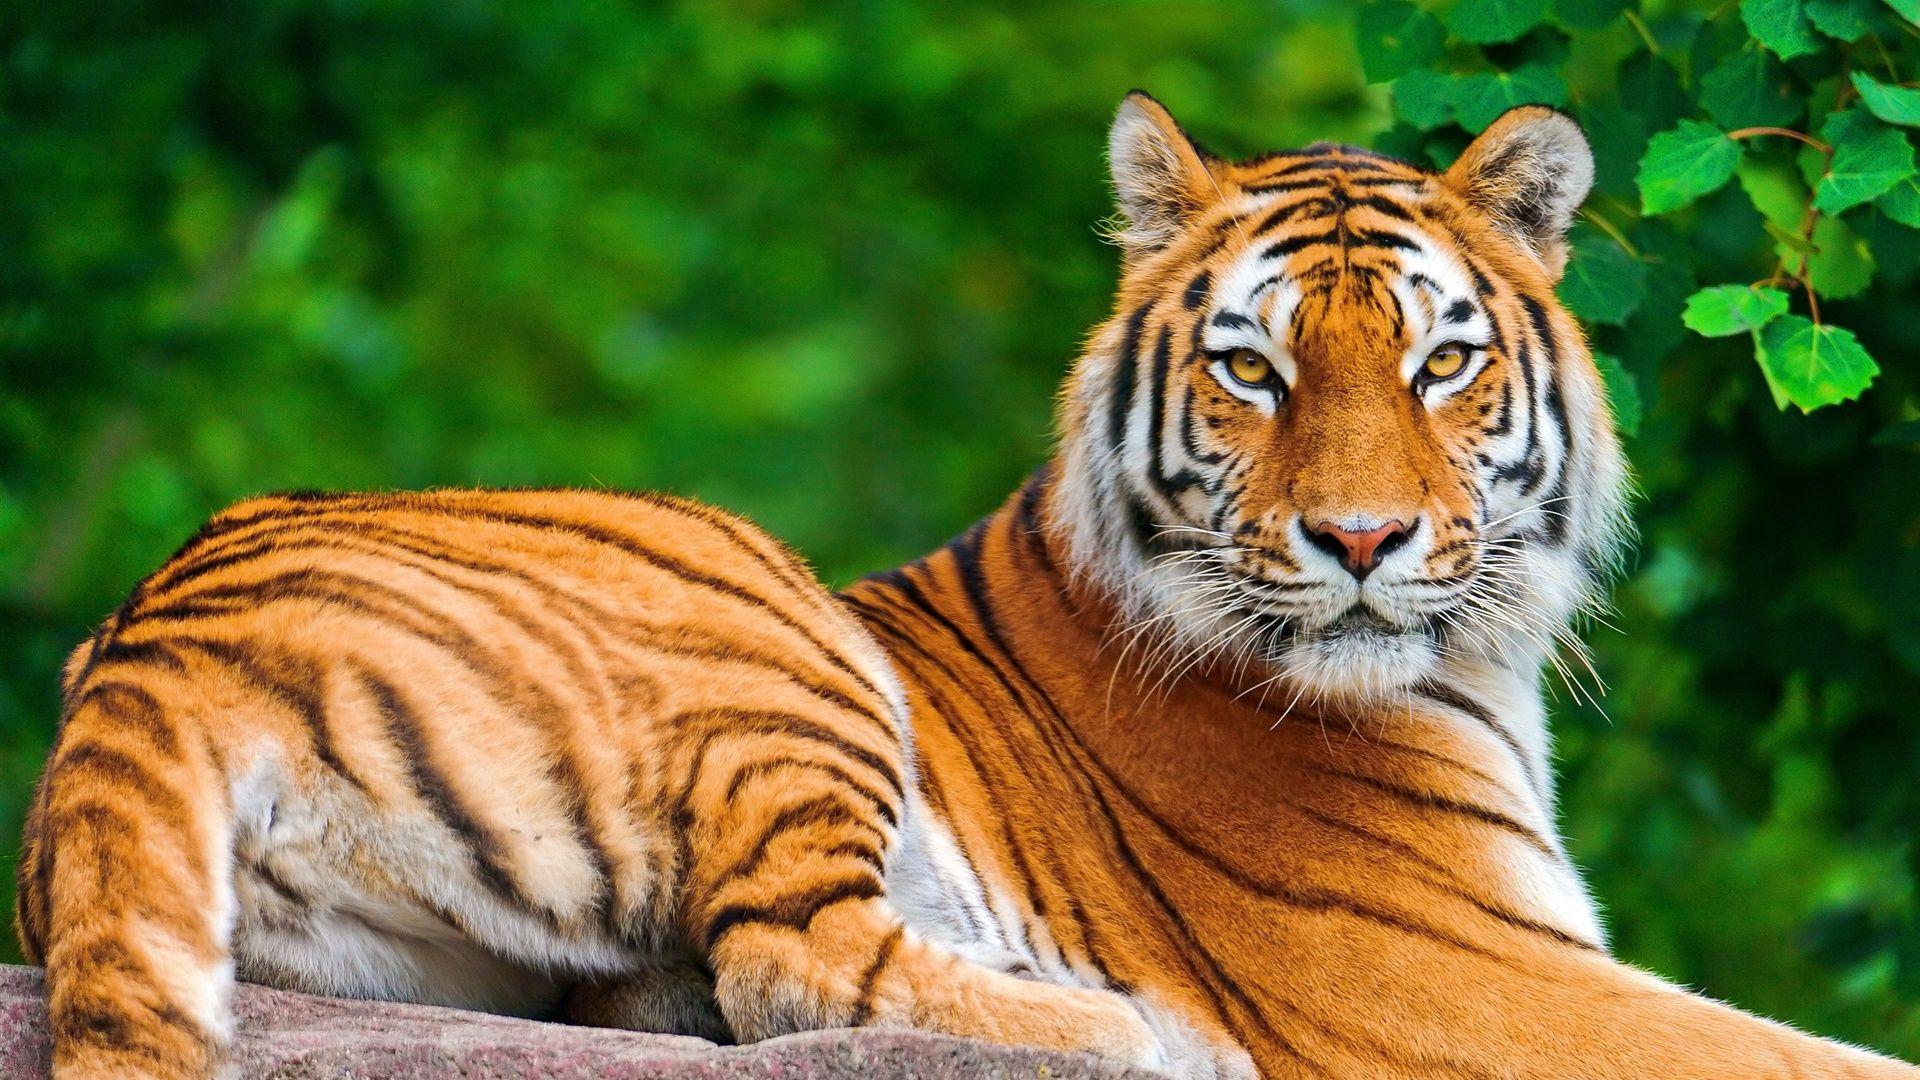 Tiger Desktop Background 17146